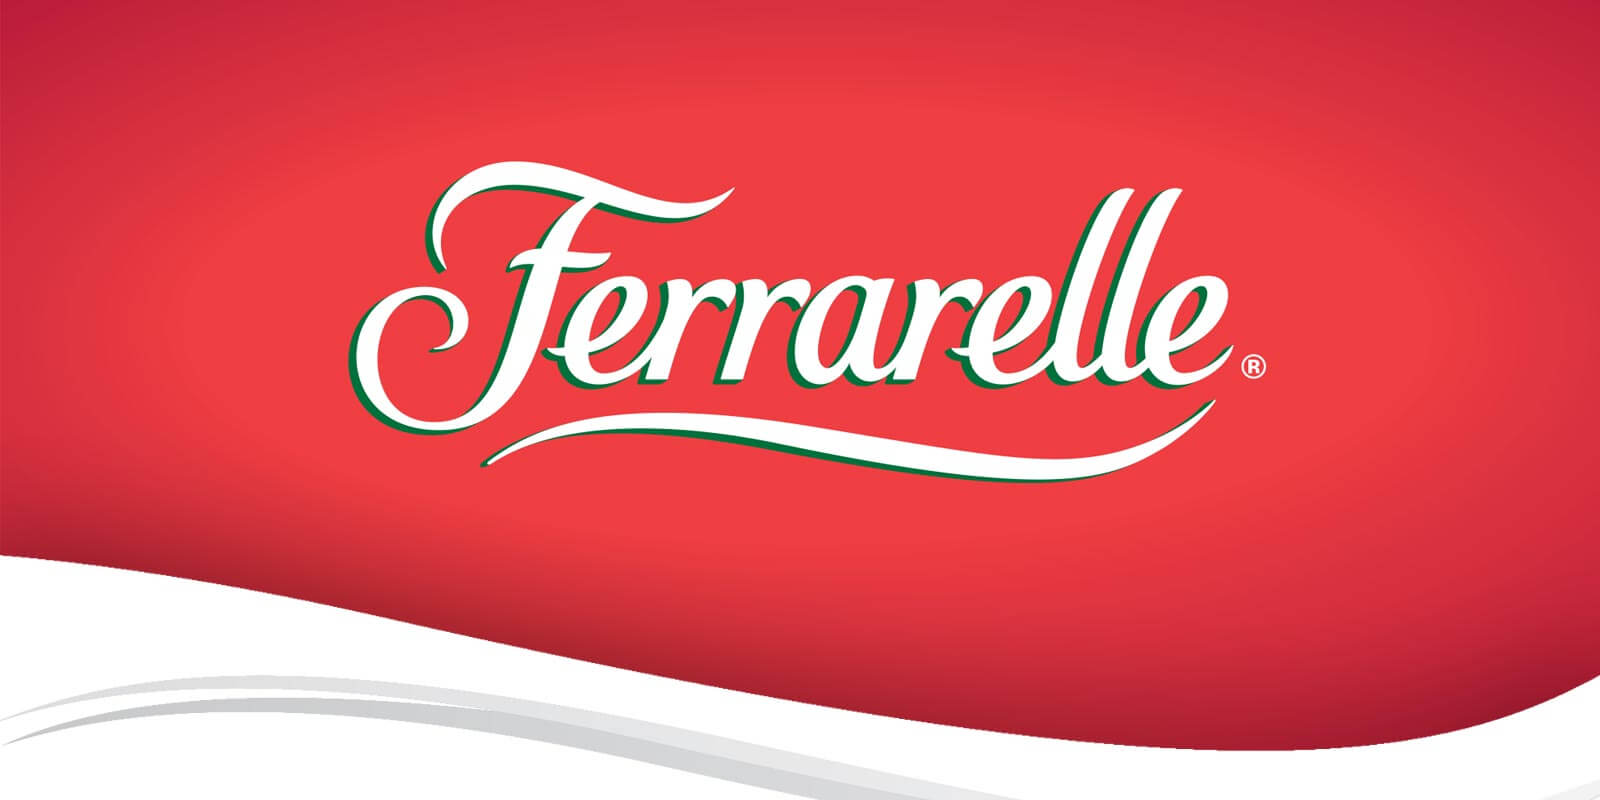 Pubblicità Ferrarelle: gli spot del brand italiano da ricordare